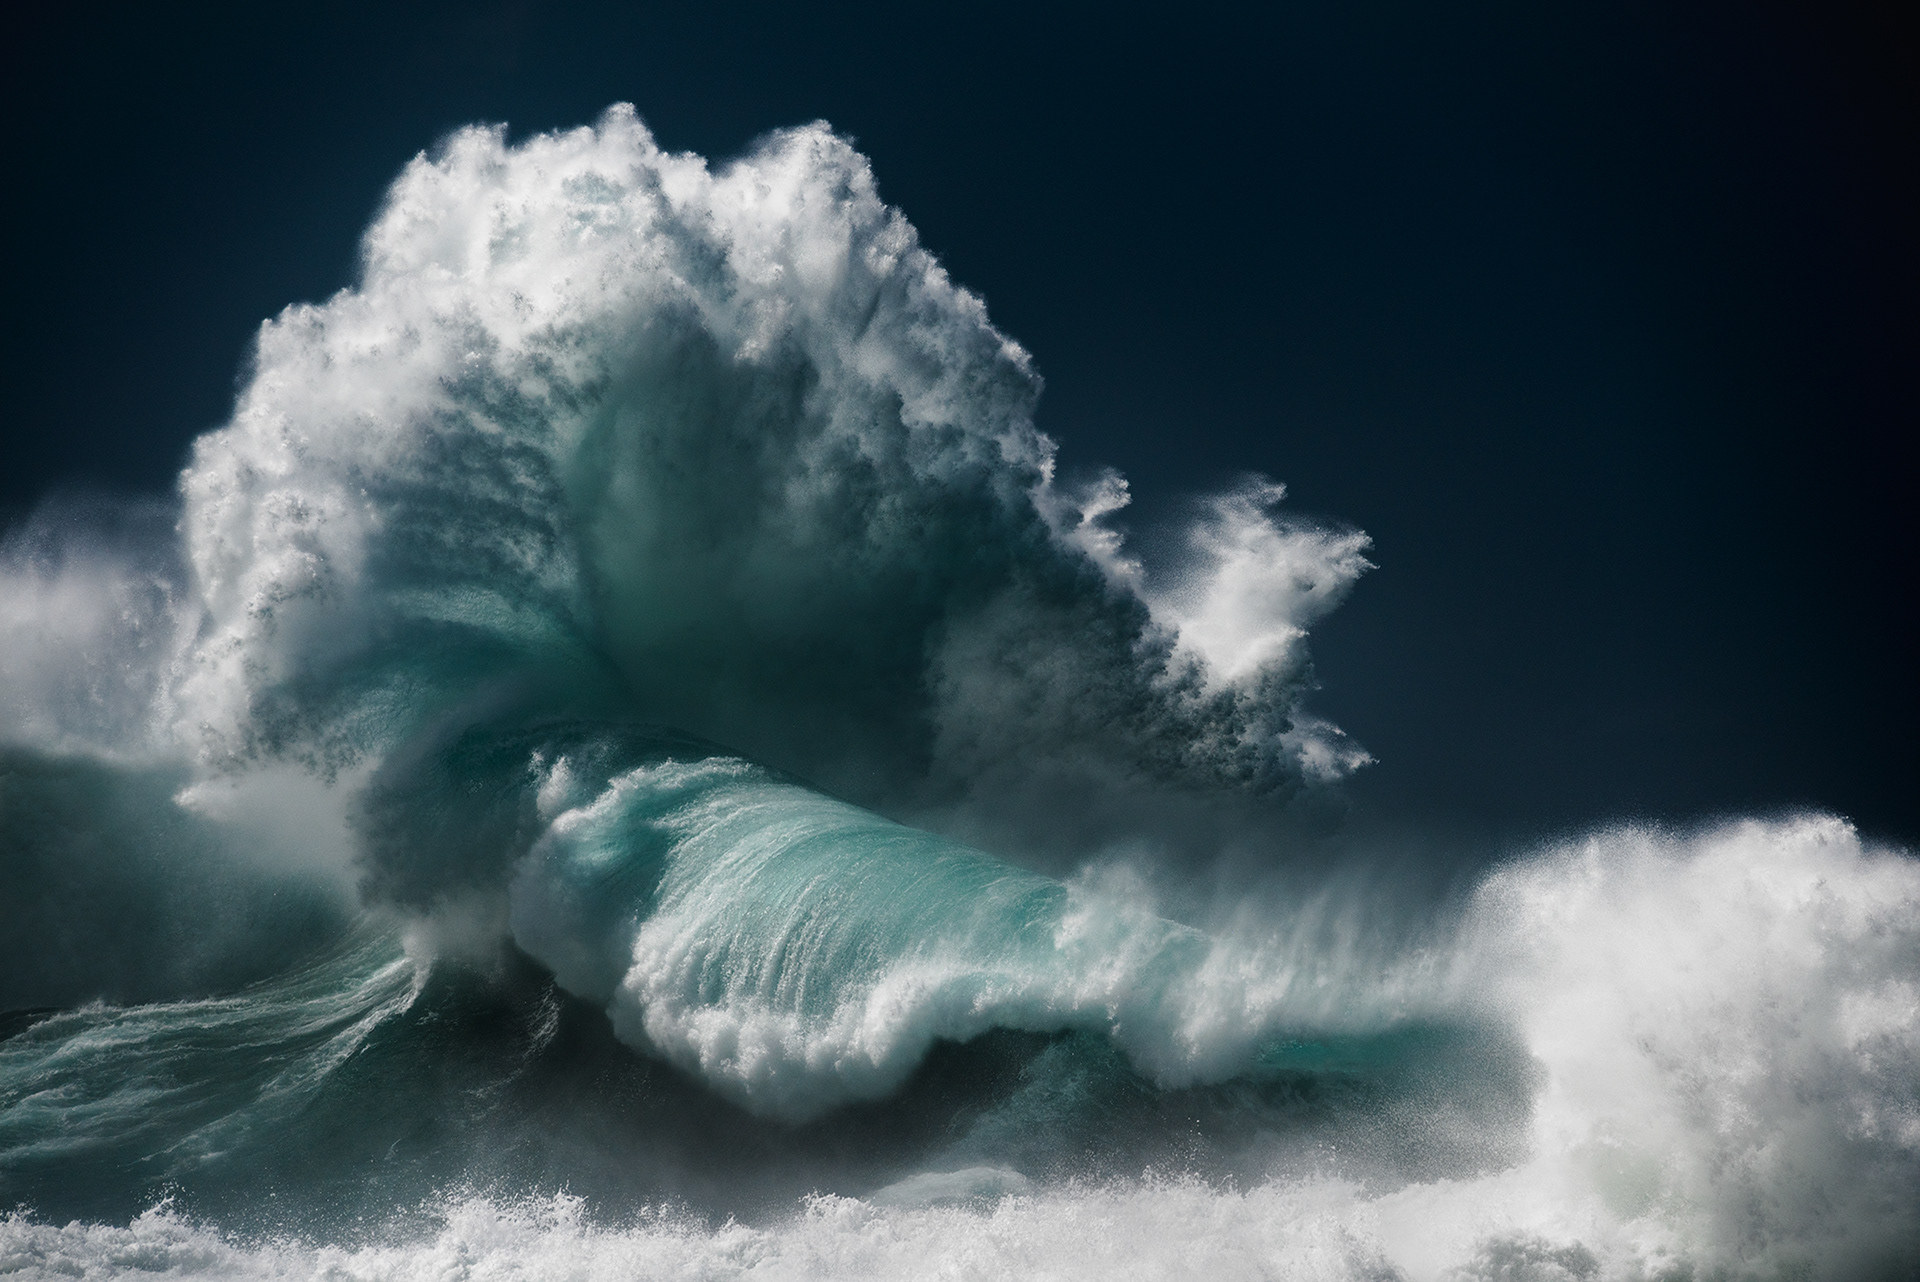 漩涡9(2016年)卢克·夏德波特(luke shadbolt)在他的大型水上照片中